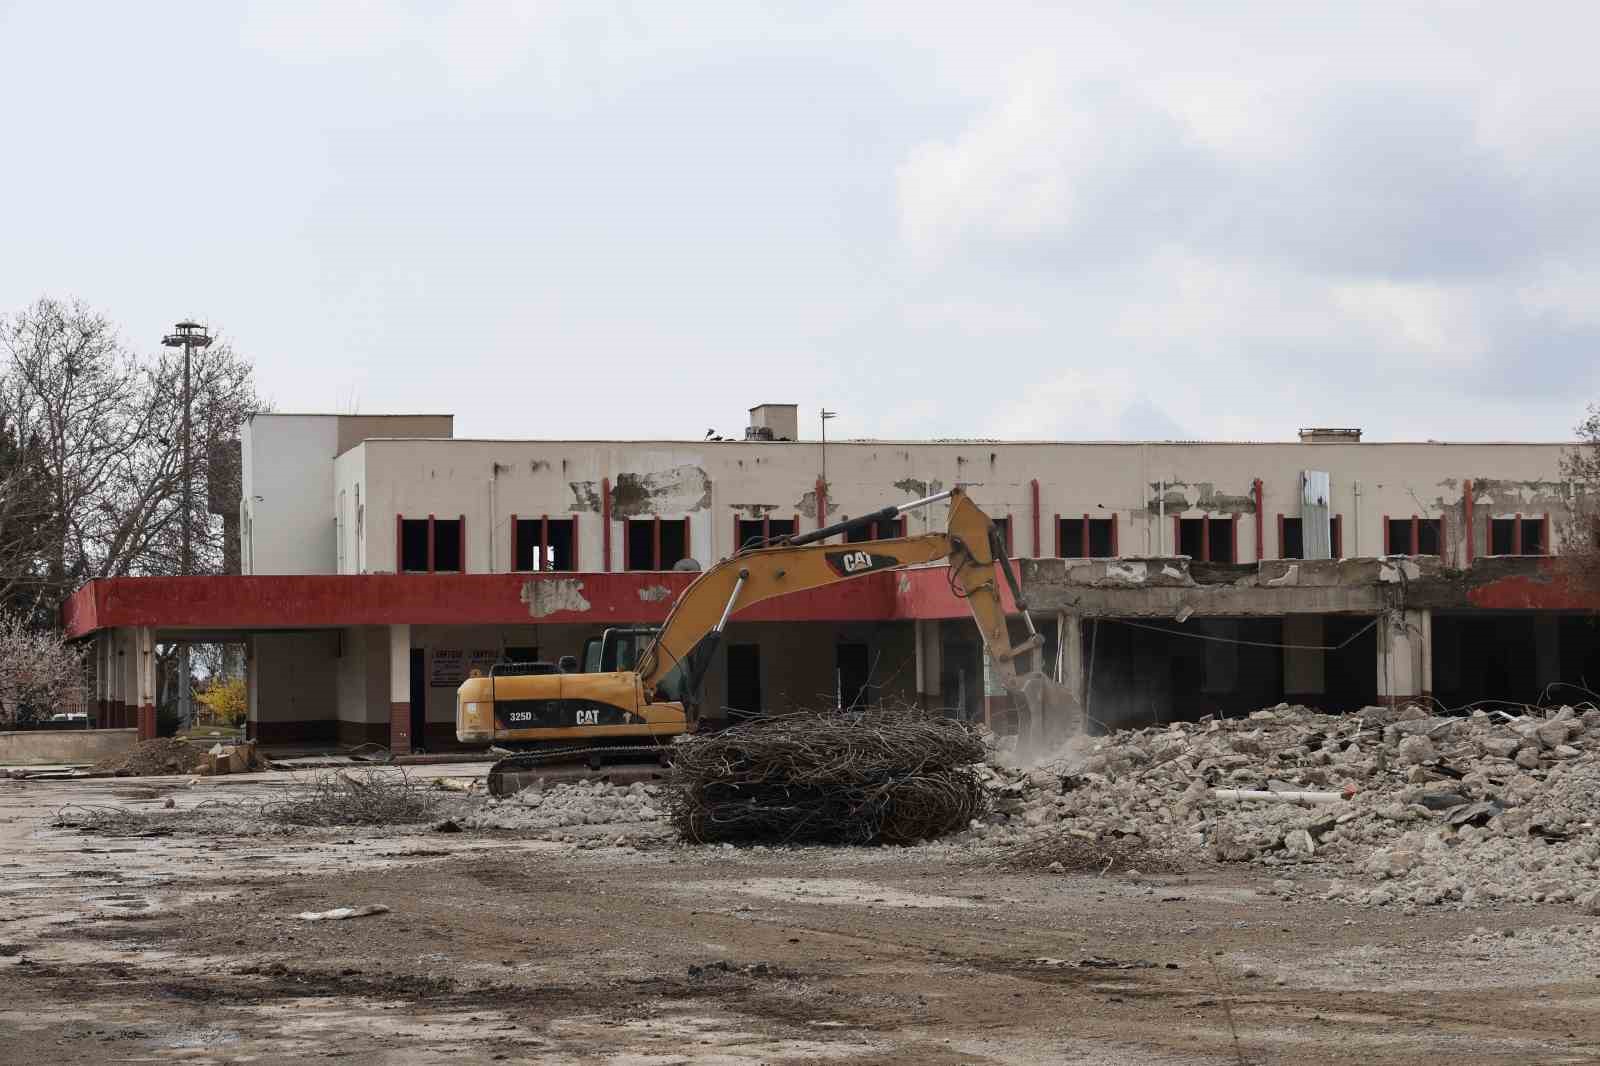 Hemen herkesin bir anısı vardı: Elazığ’da eski terminal binasının son anları havadan görüntülendi
